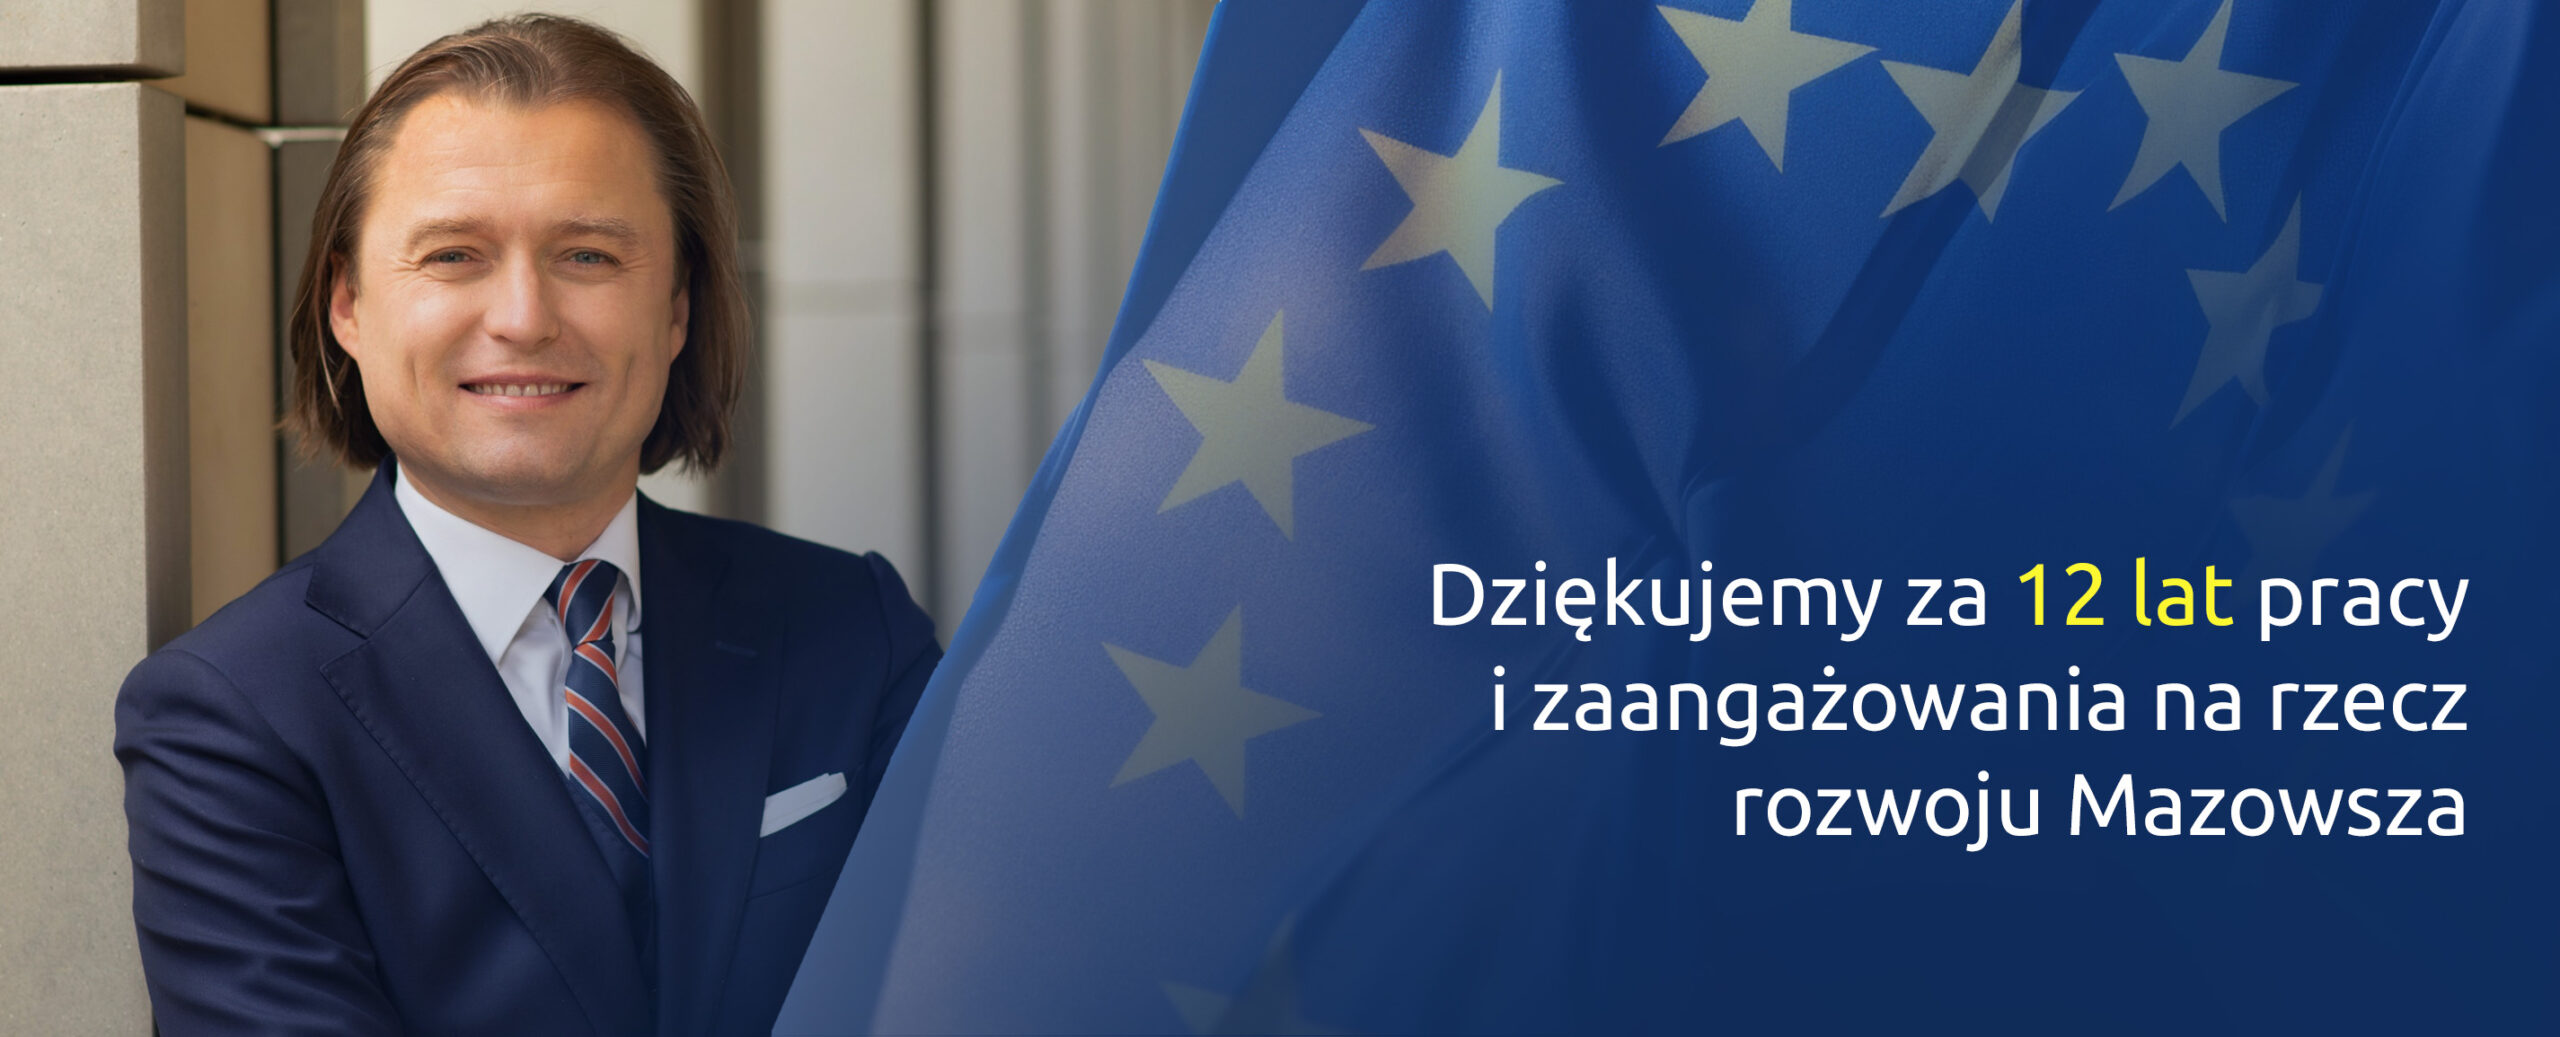 Dziękujemy za 12 lat pracy i zaangażowania na rzecz rozwoju Mazowsza , a w tle flaga Unii Europejskiej oraz zdjęcie byłego Dyrektora Mazowieckiej Jednostki Wdrażania Programów Unijnych Mariusza Frankowskiego